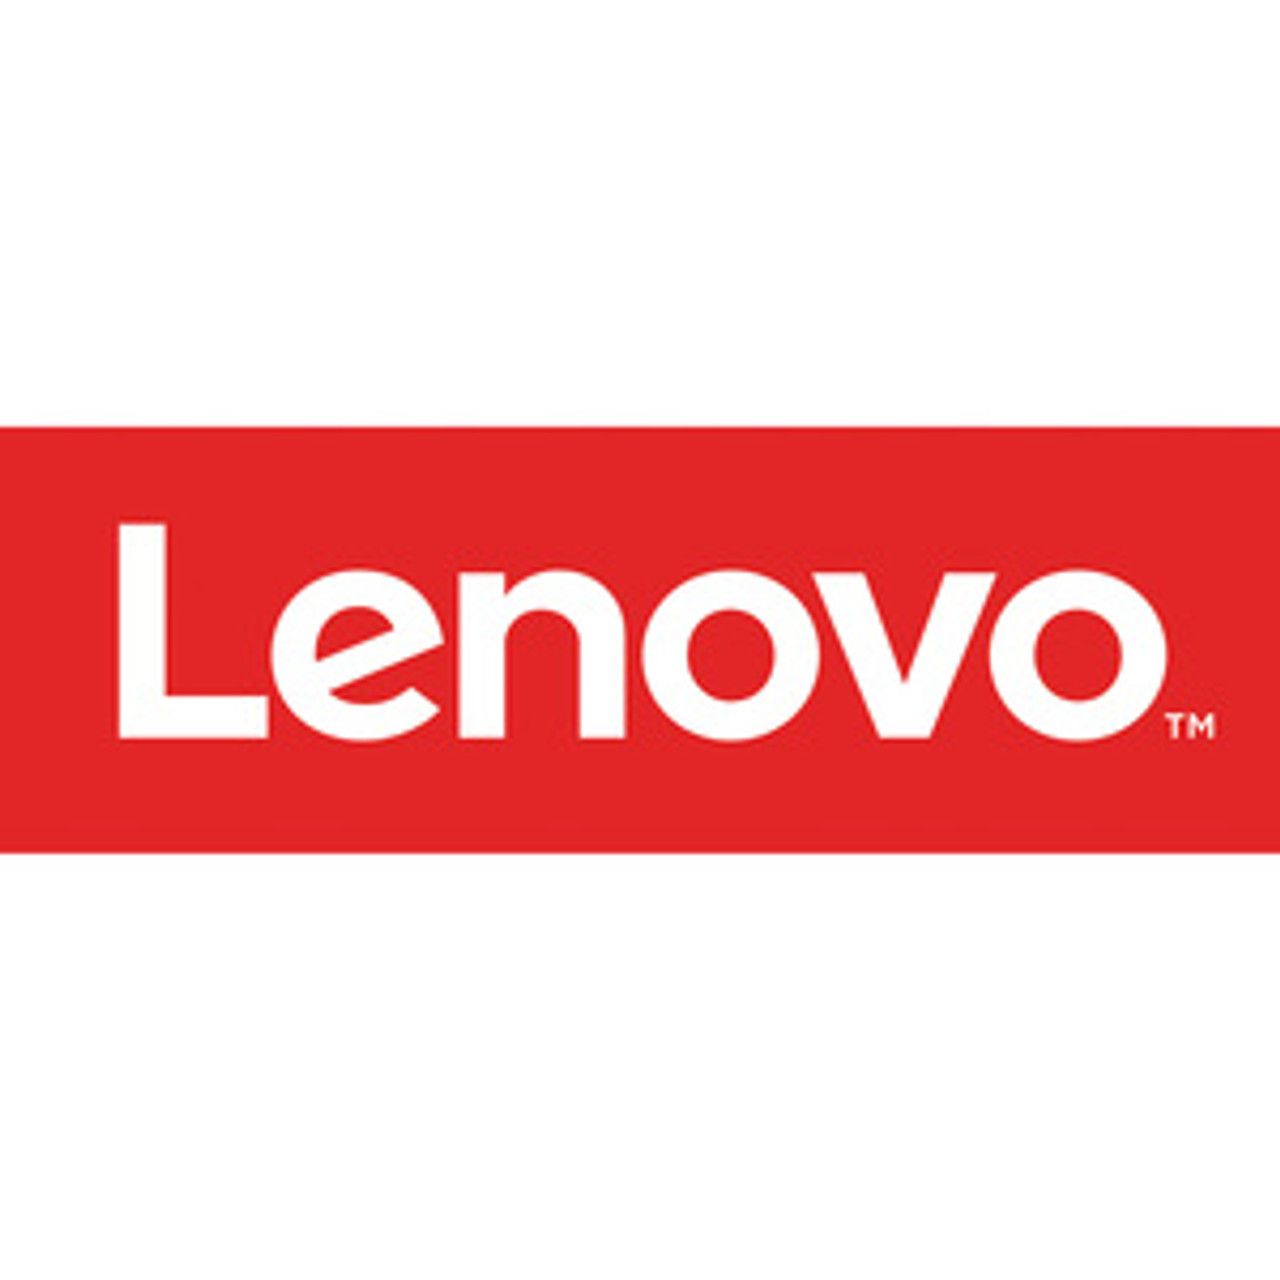 Lenovo 10T7001SUS